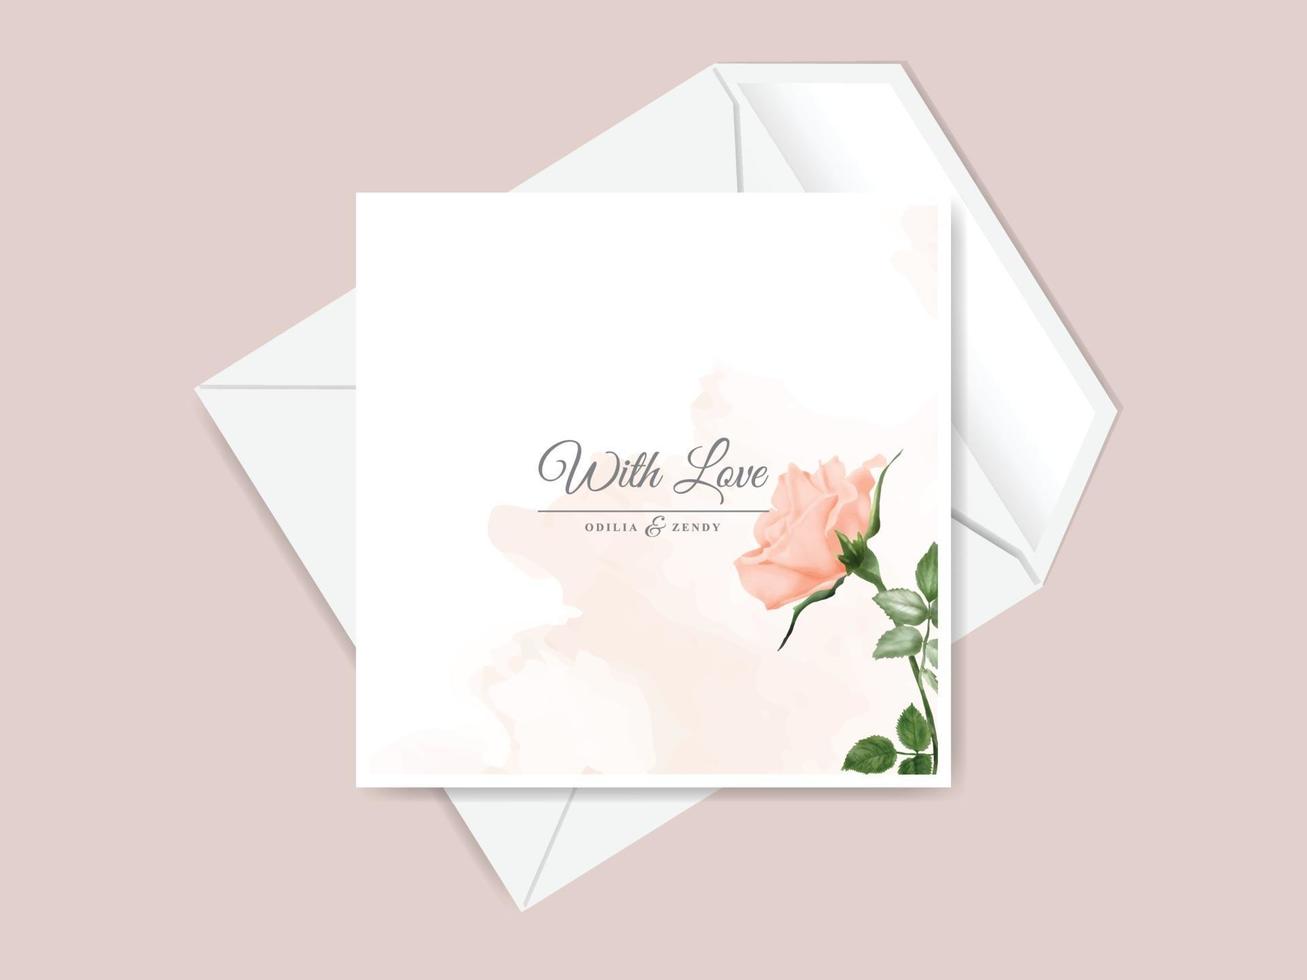 belle et élégante carte d'invitation de mariage dessiné main floral vecteur